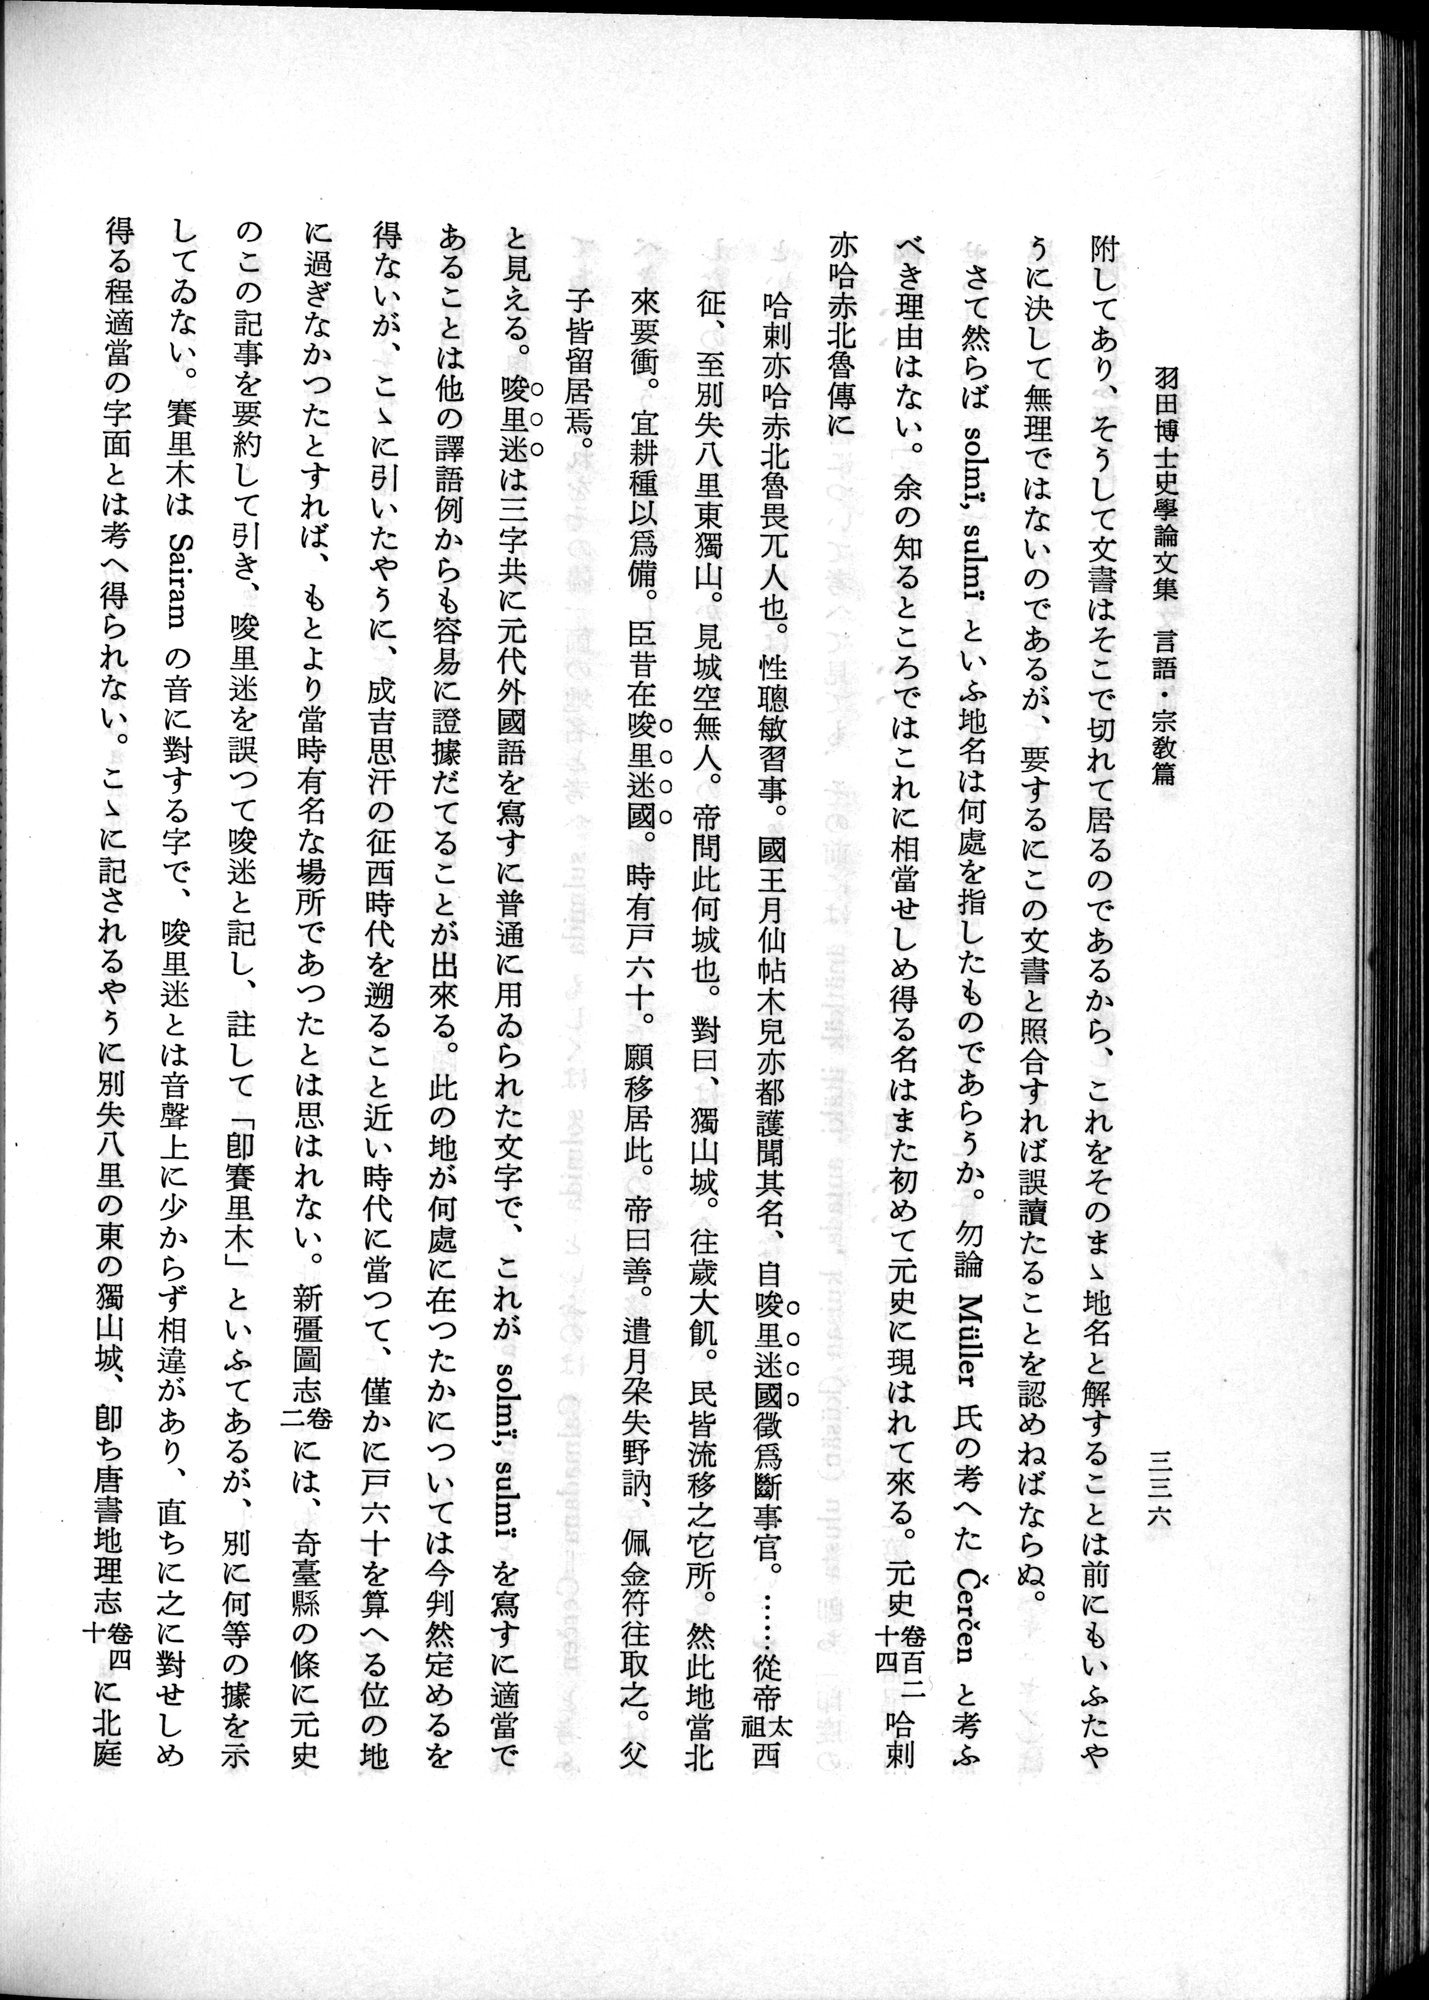 羽田博士史学論文集 : vol.2 / Page 398 (Grayscale High Resolution Image)